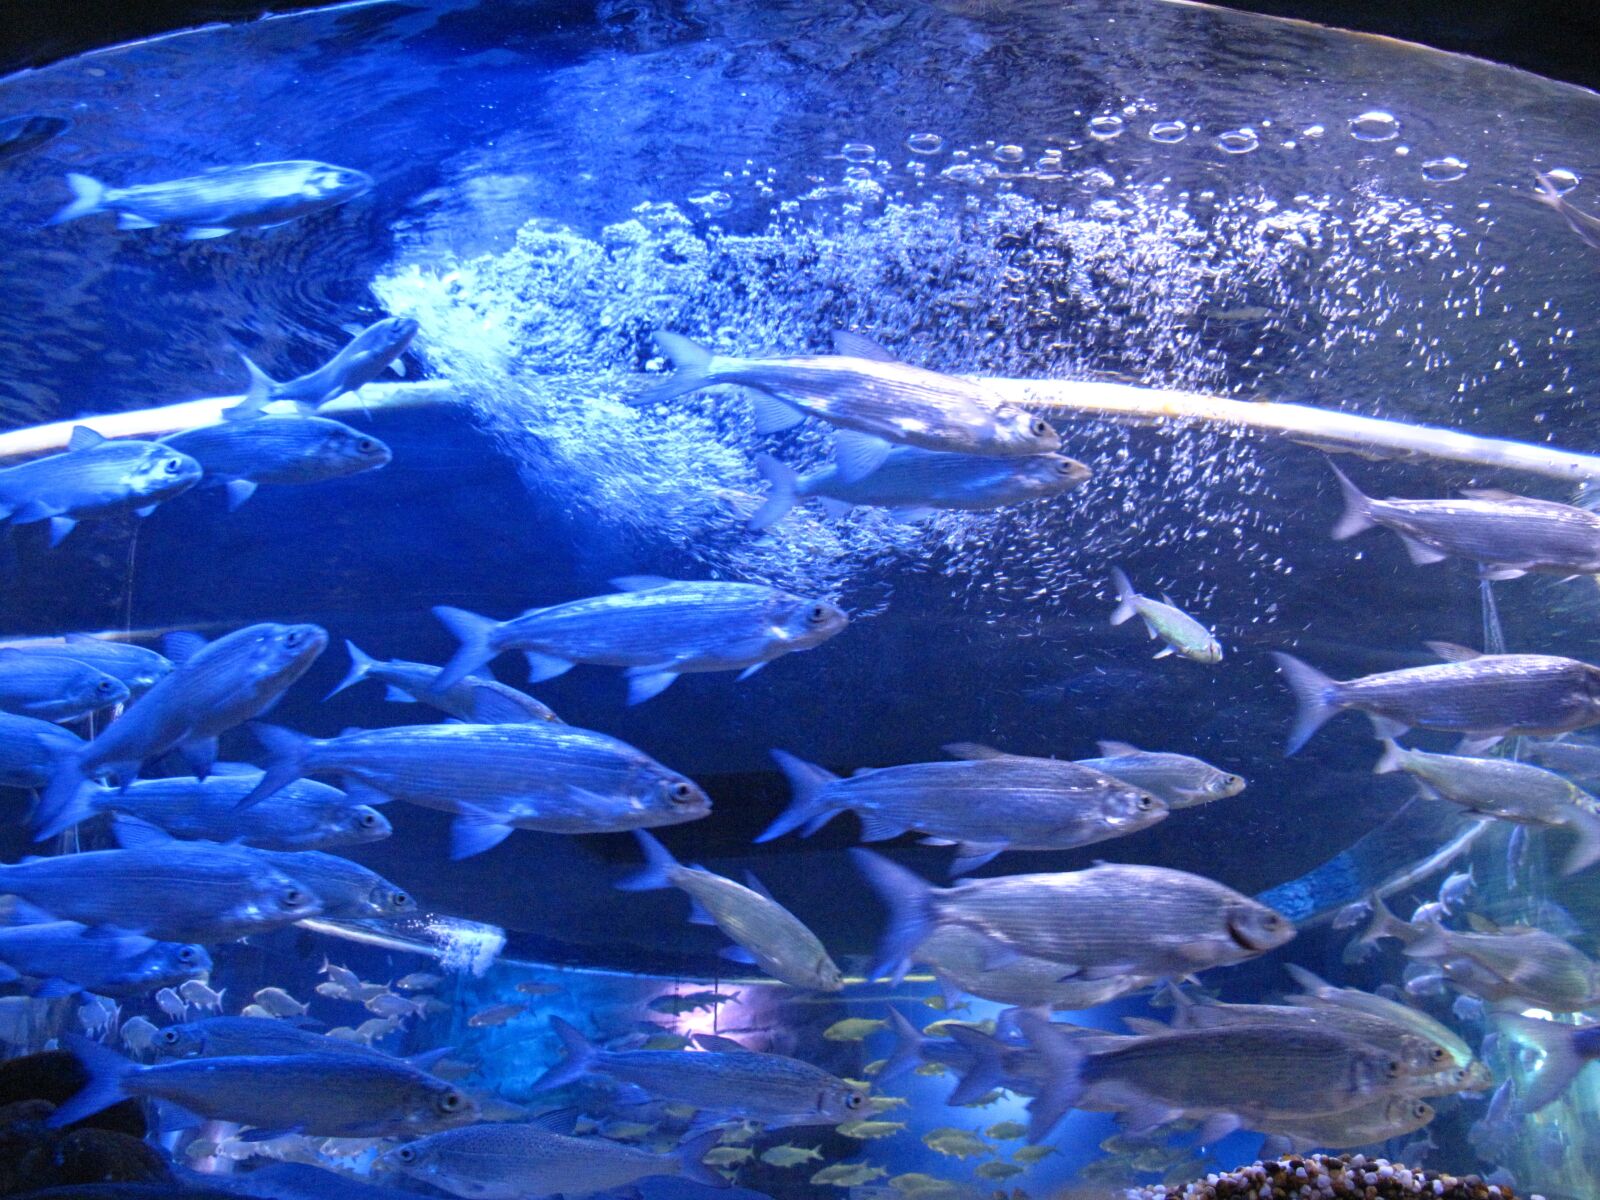 Canon PowerShot G10 sample photo. Aquarium, fish, underwater photography